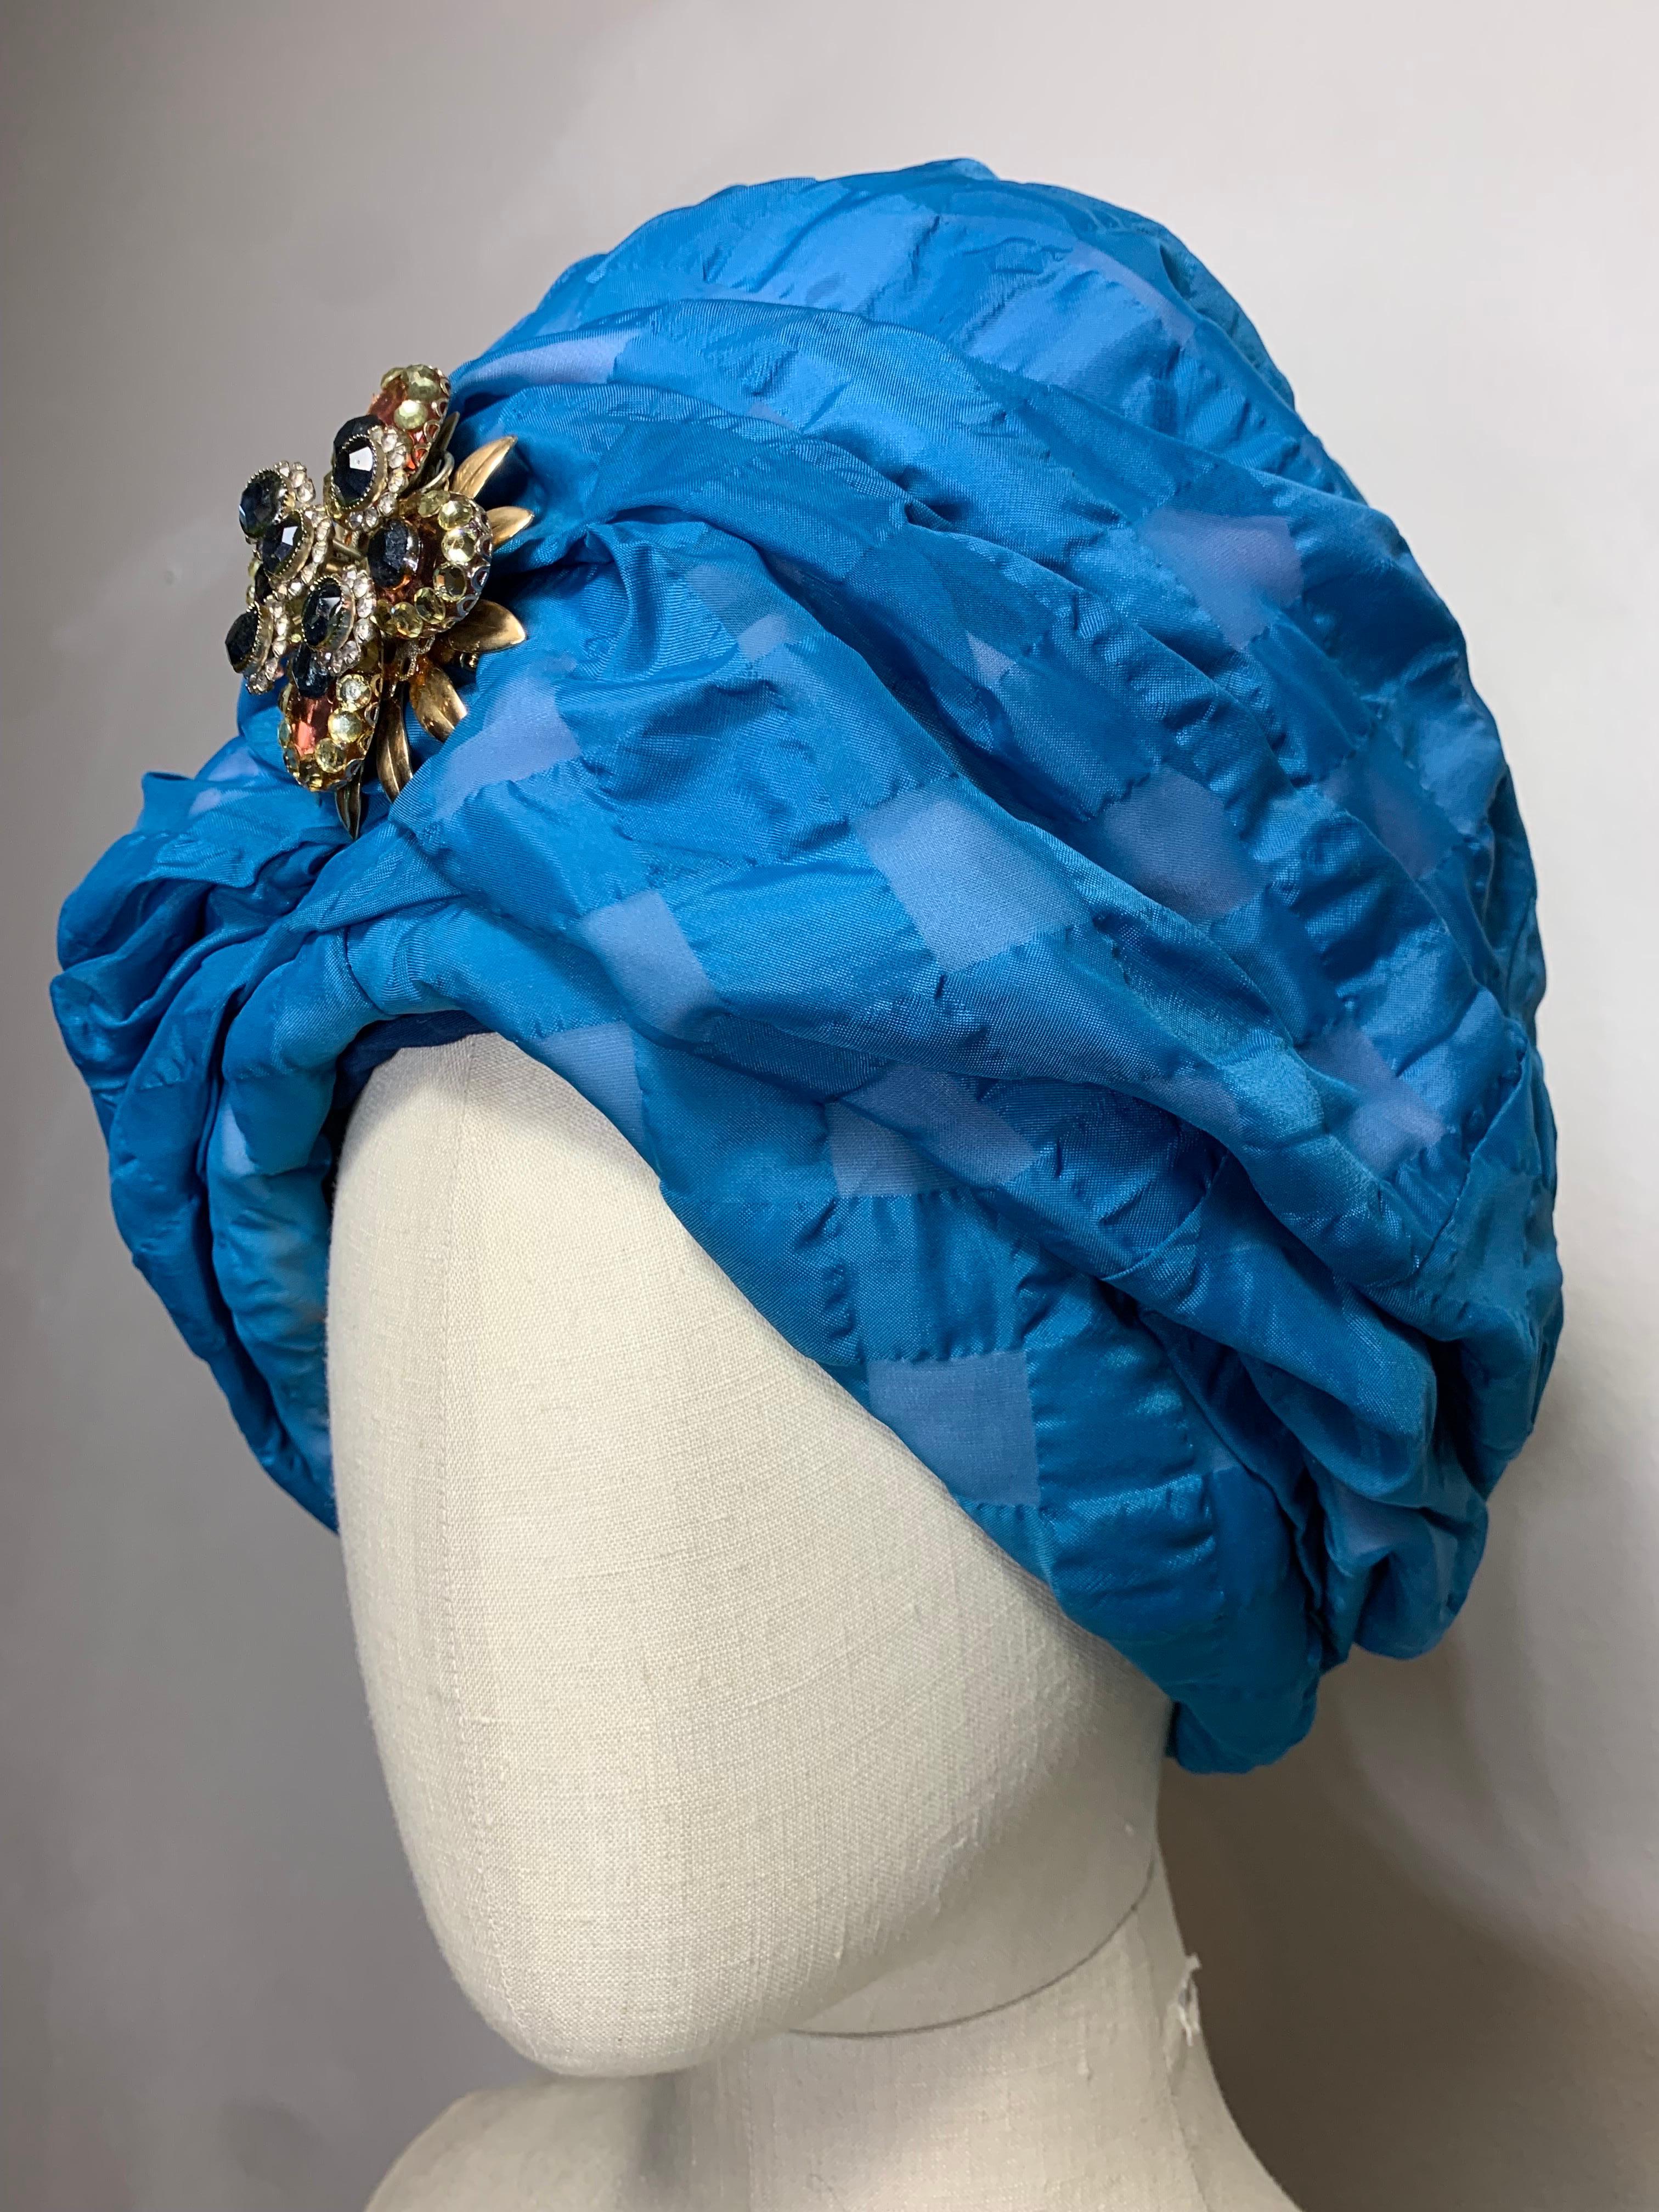 Turban rembourré à carreaux en seersucker bleu azur, fait sur mesure pour le printemps et l'été, avec broche en bijou coordonnée :  Une magnifique nuance de bleu avec une silhouette époustouflante.  Taille 7 1/2.  

Visitez notre boutique 1Dibs pour